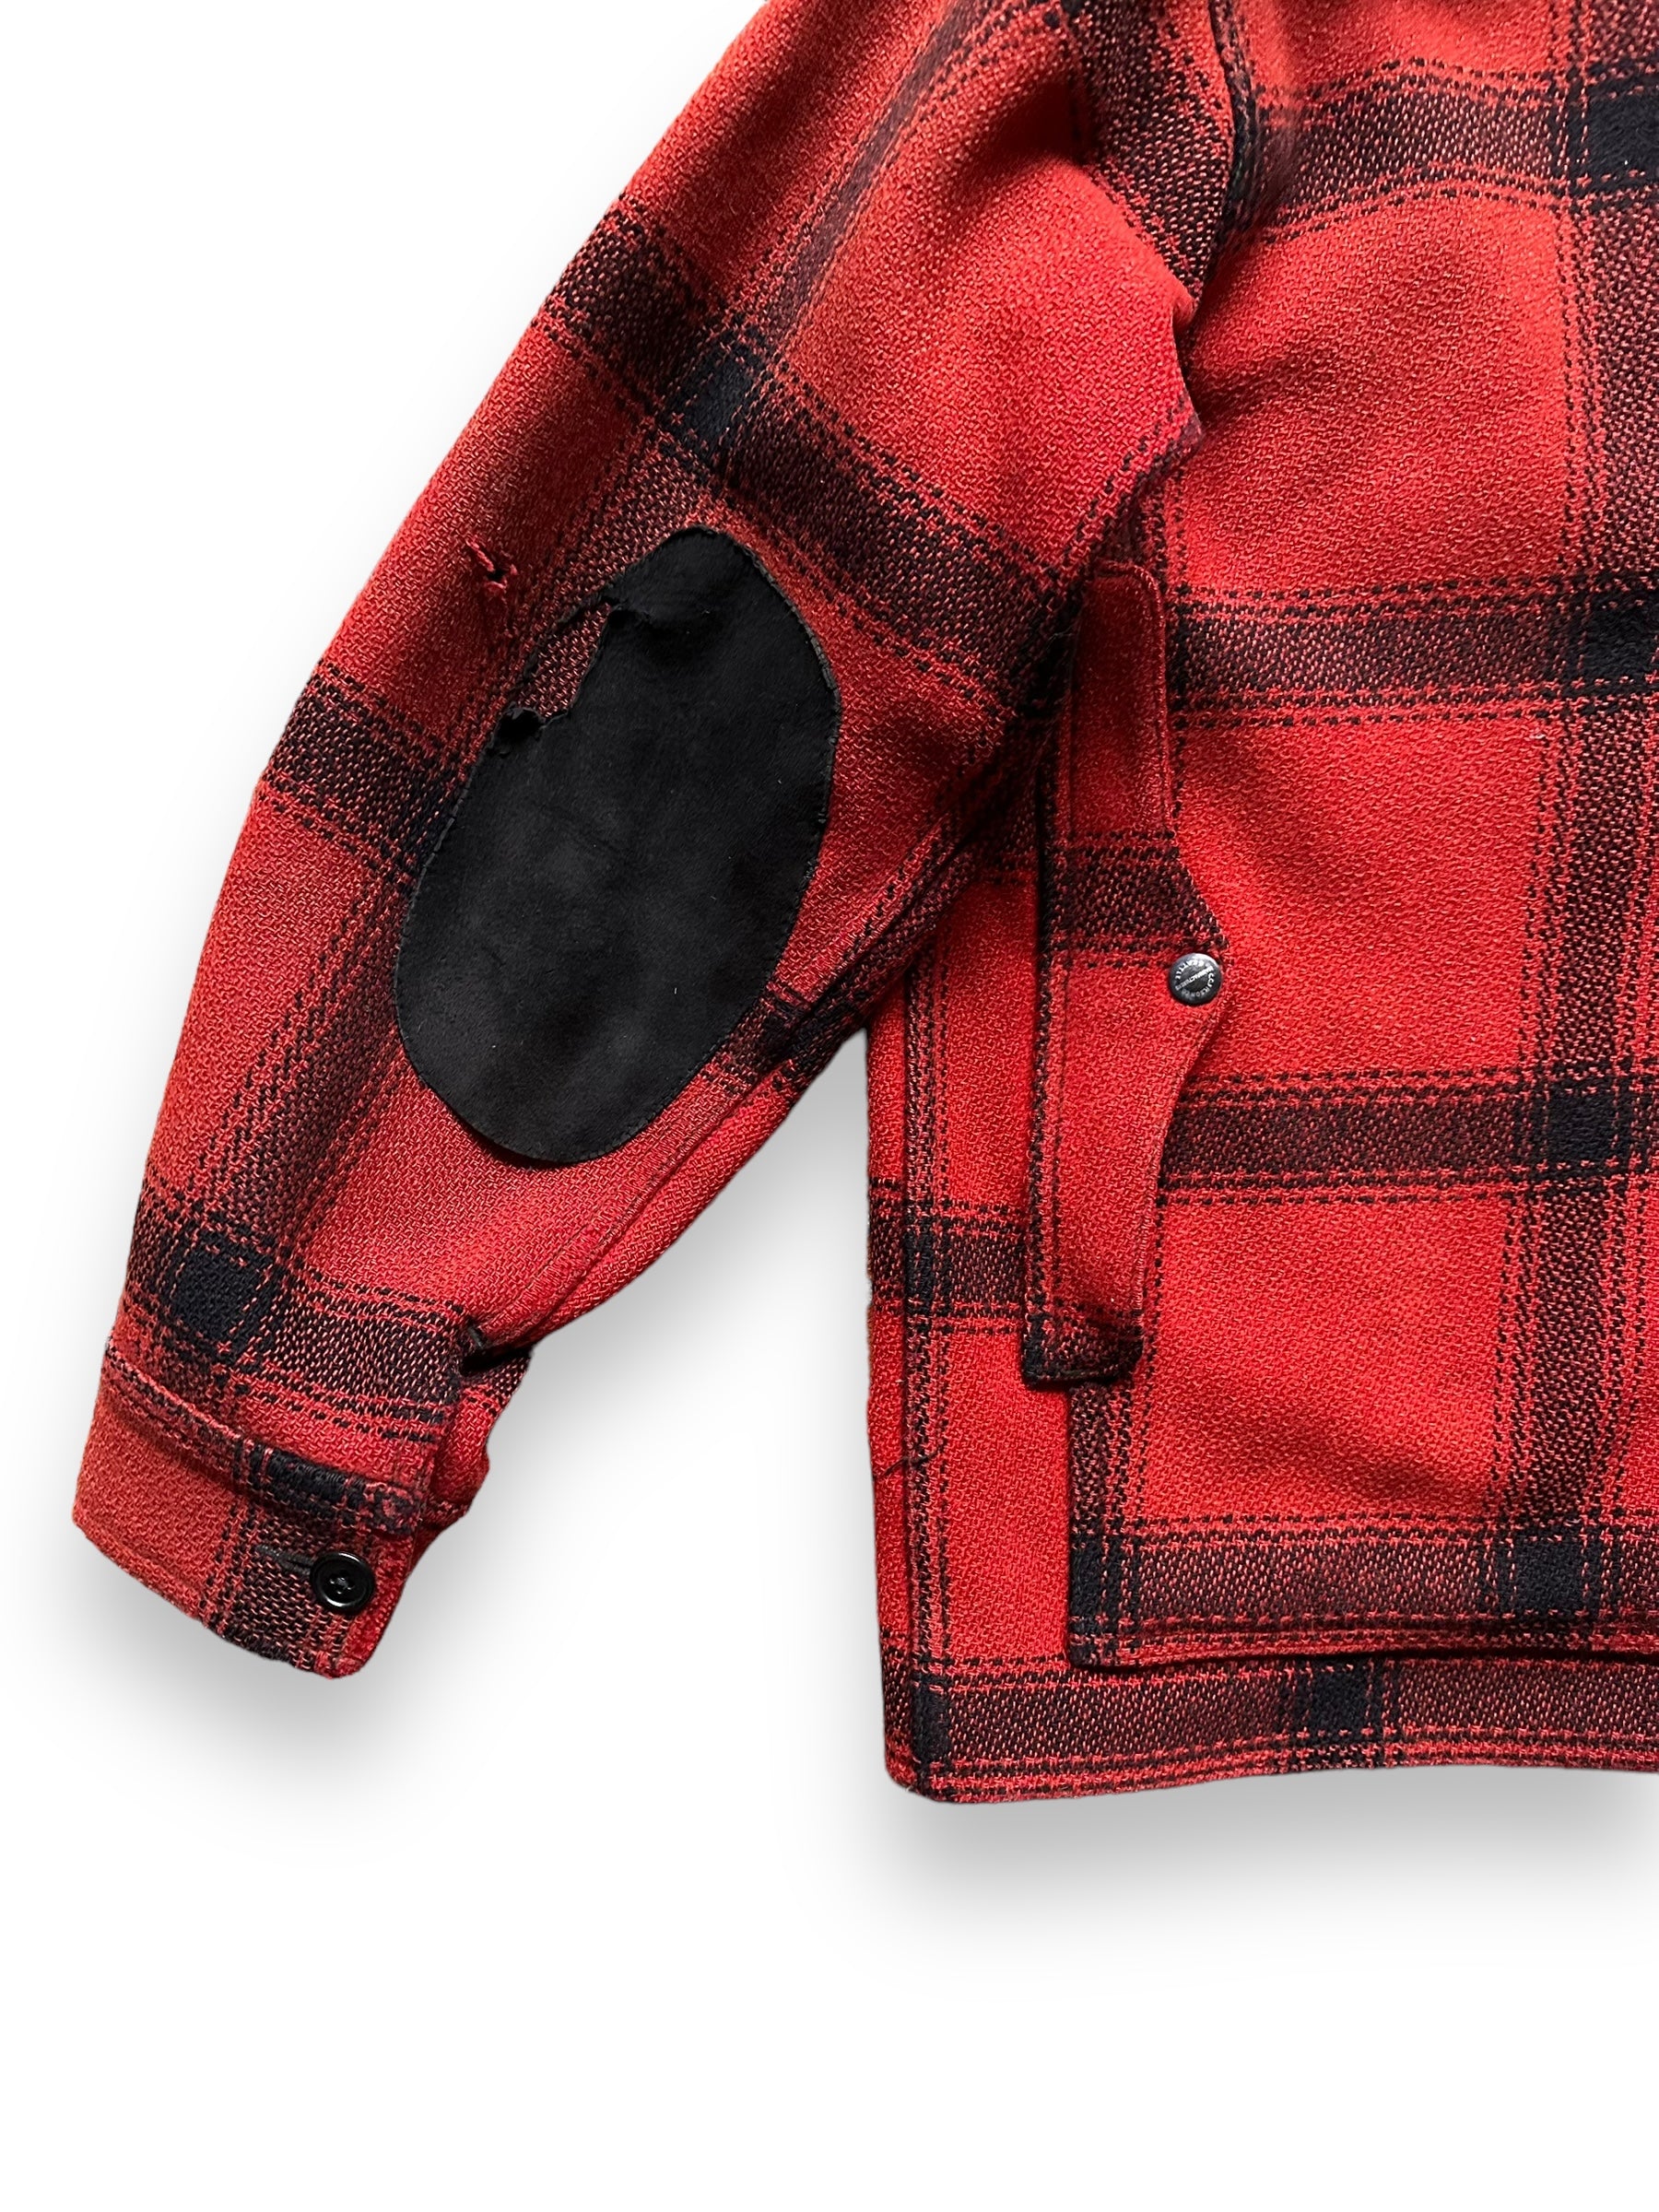 Lower Rear Left View of Vintage 75% Red Filson Hunter Wool Jacket SZ 44 | Vintage Filson Workwear Seattle | Vintage Workwear Seattle